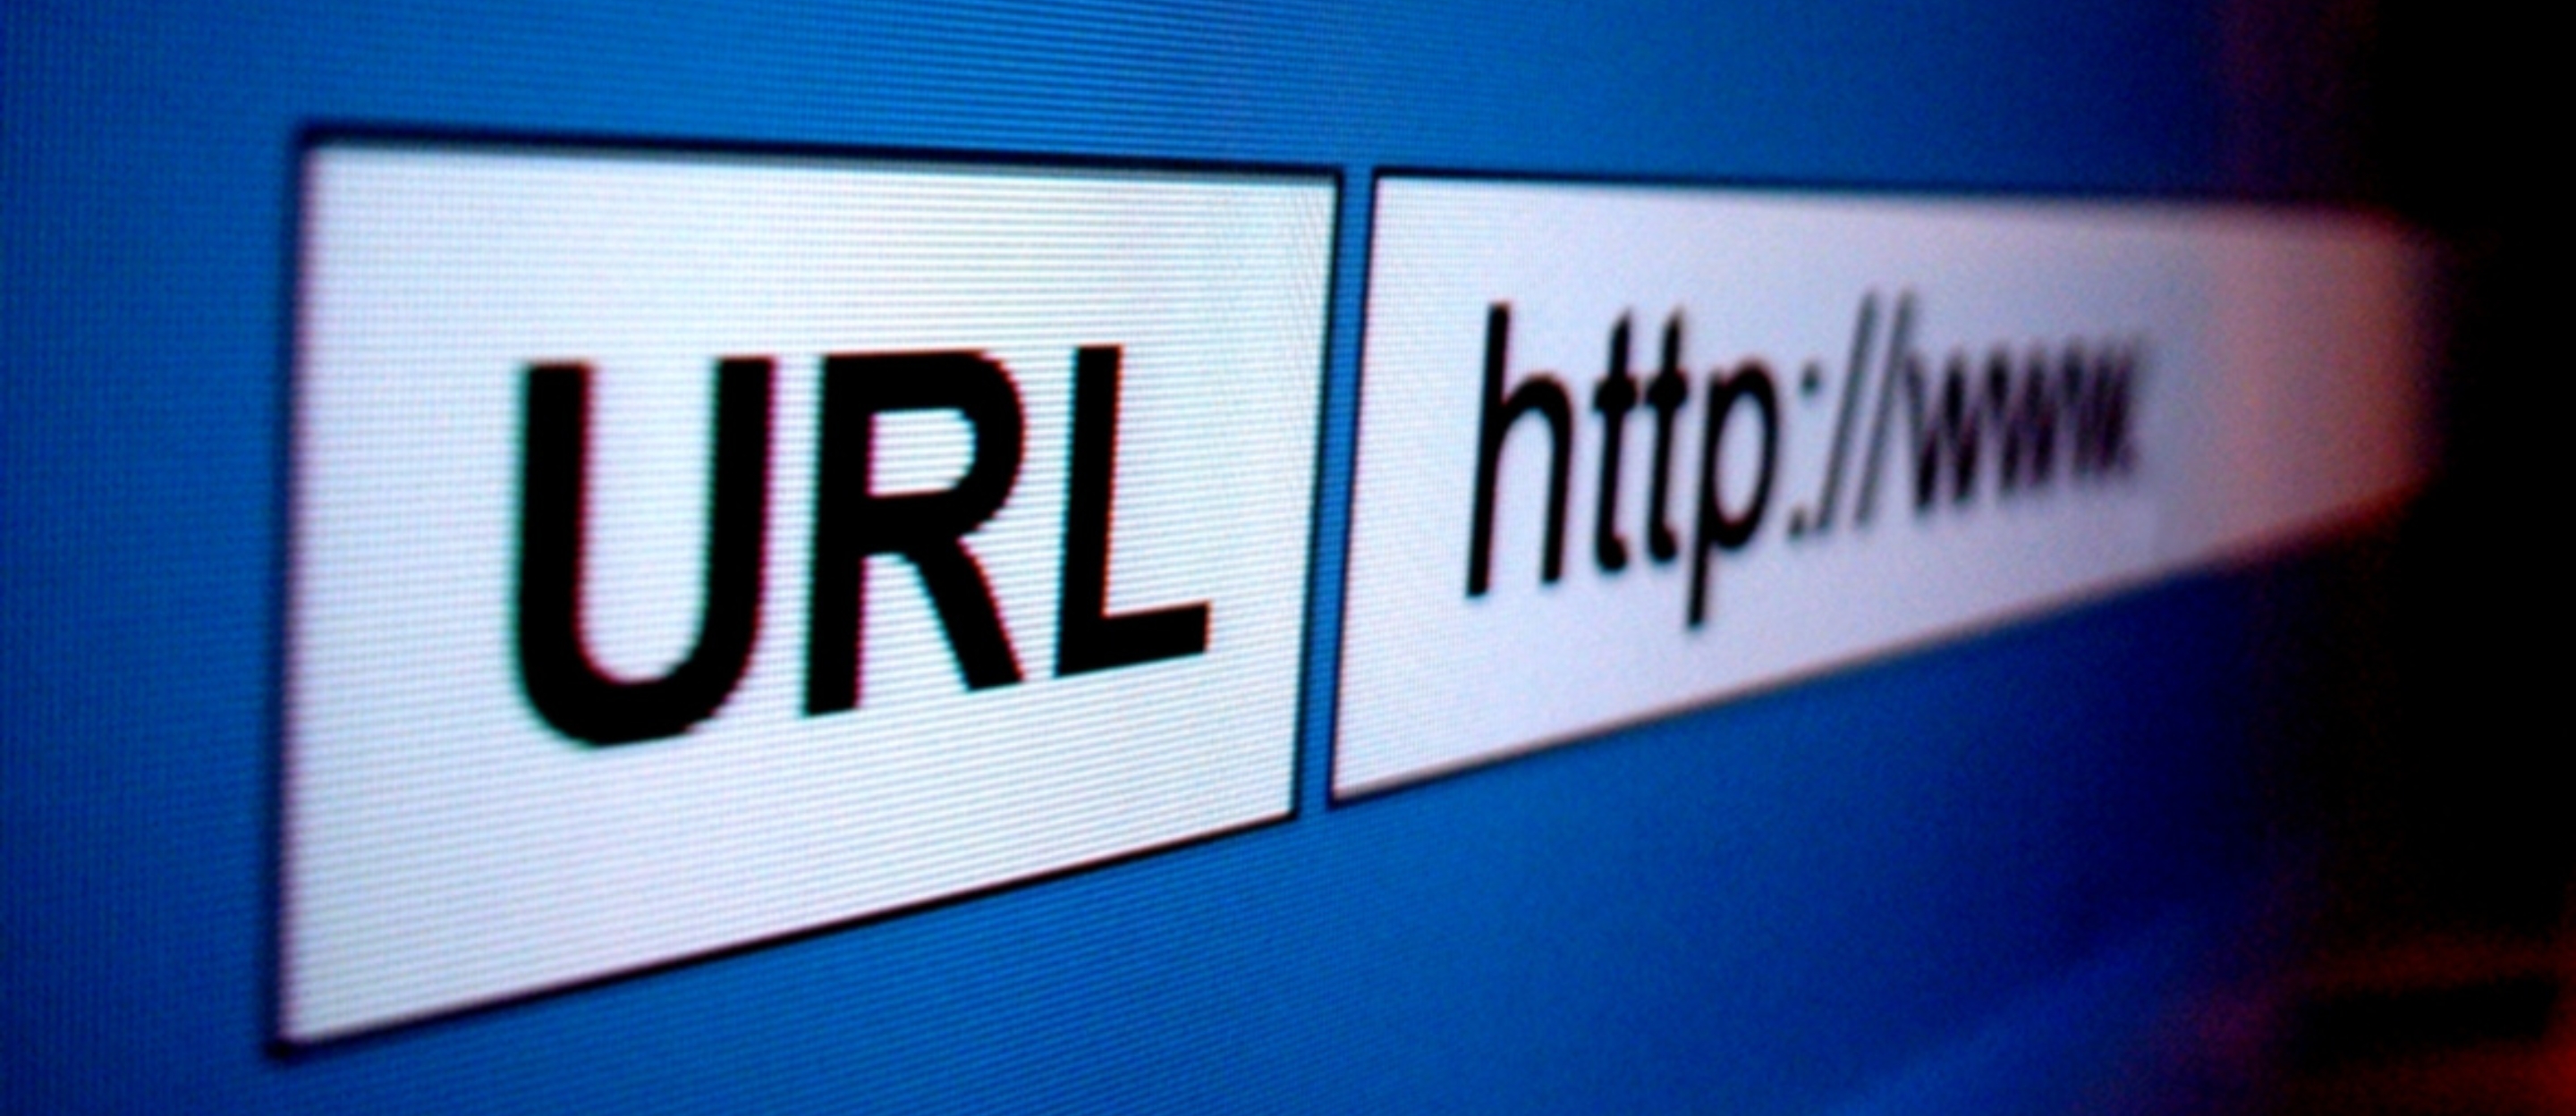 Fundamentals of URLs & UTMs